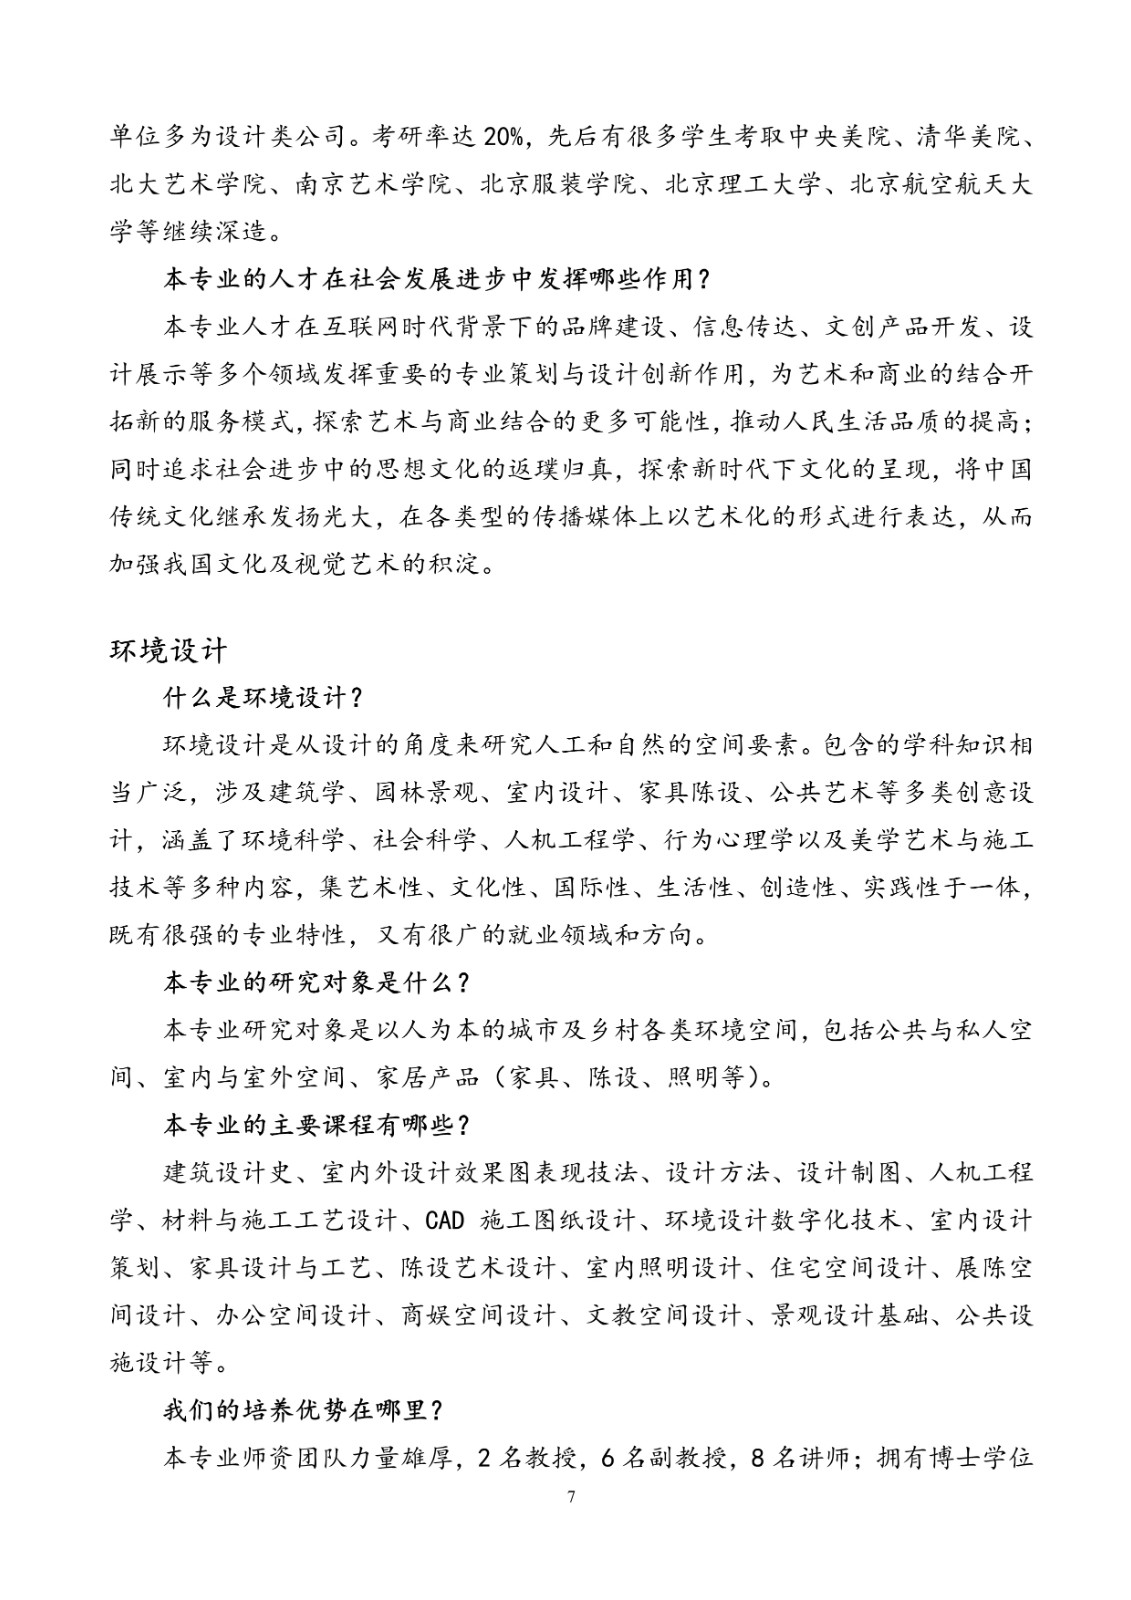 2020年北京联合大学艺术类招生简章